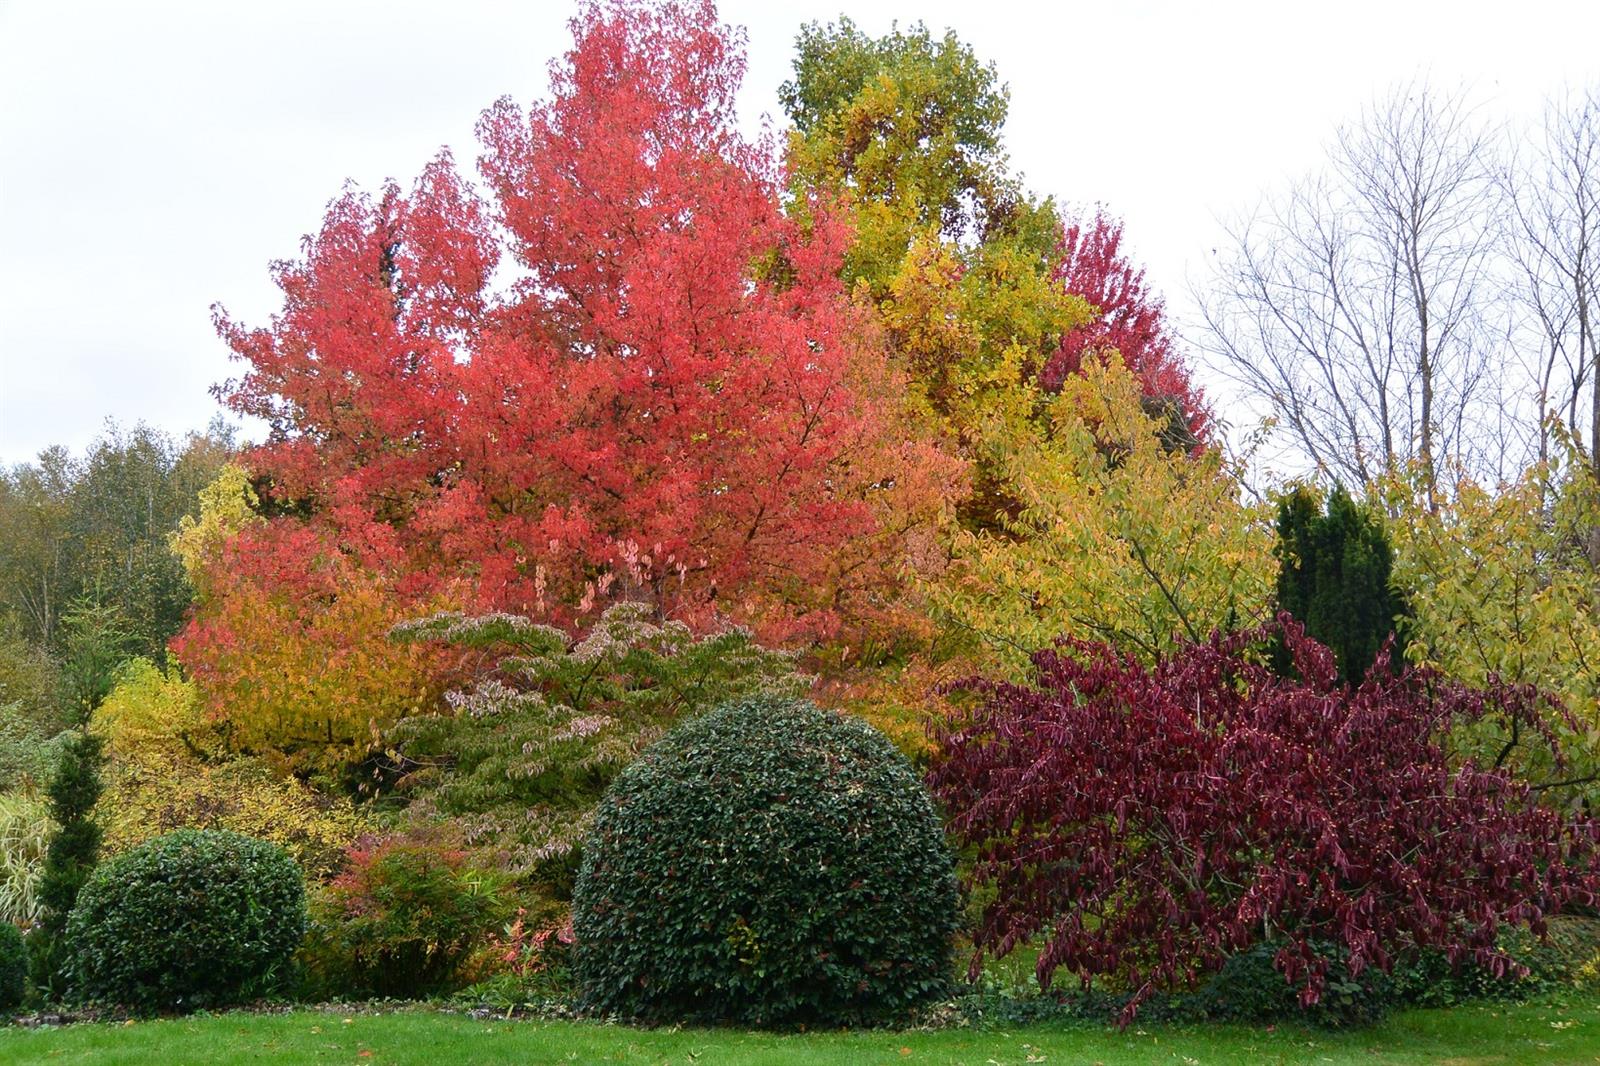 Les couleurs d'automne se fondent entre les liquidambars, les érables, les buis